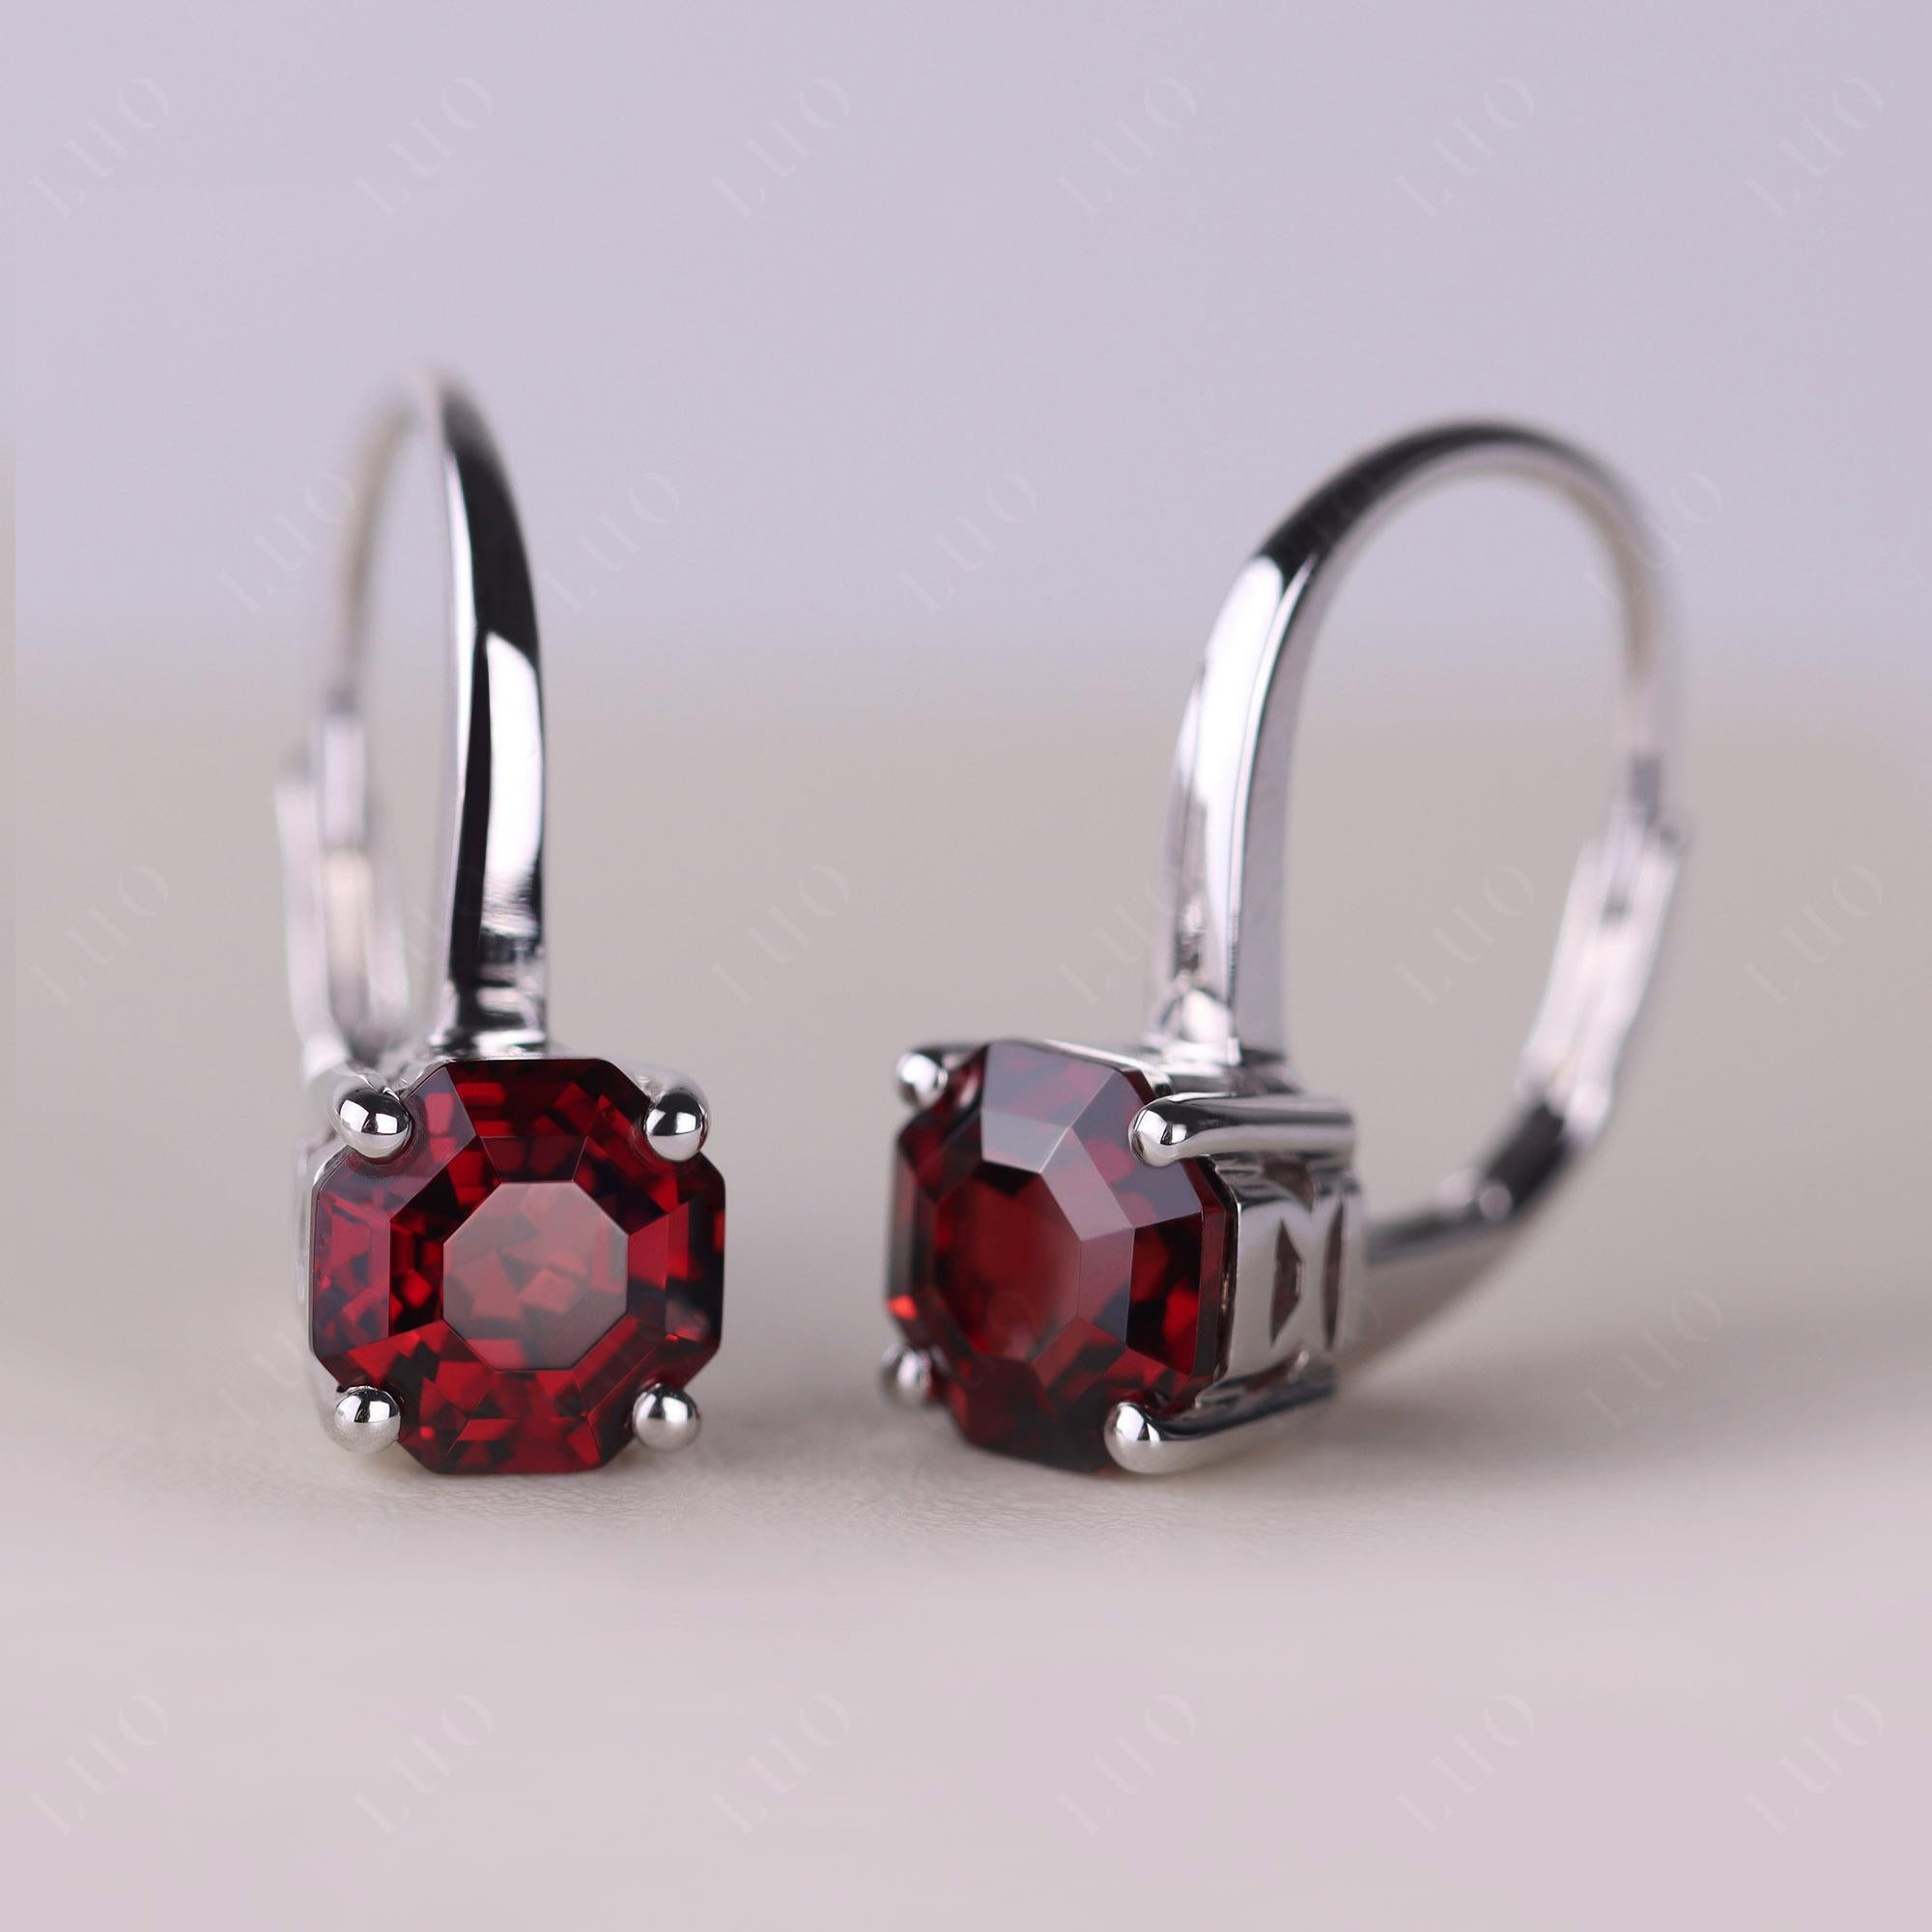 Octagon Cut Garnet Leverback Earrings - LUO Jewelry